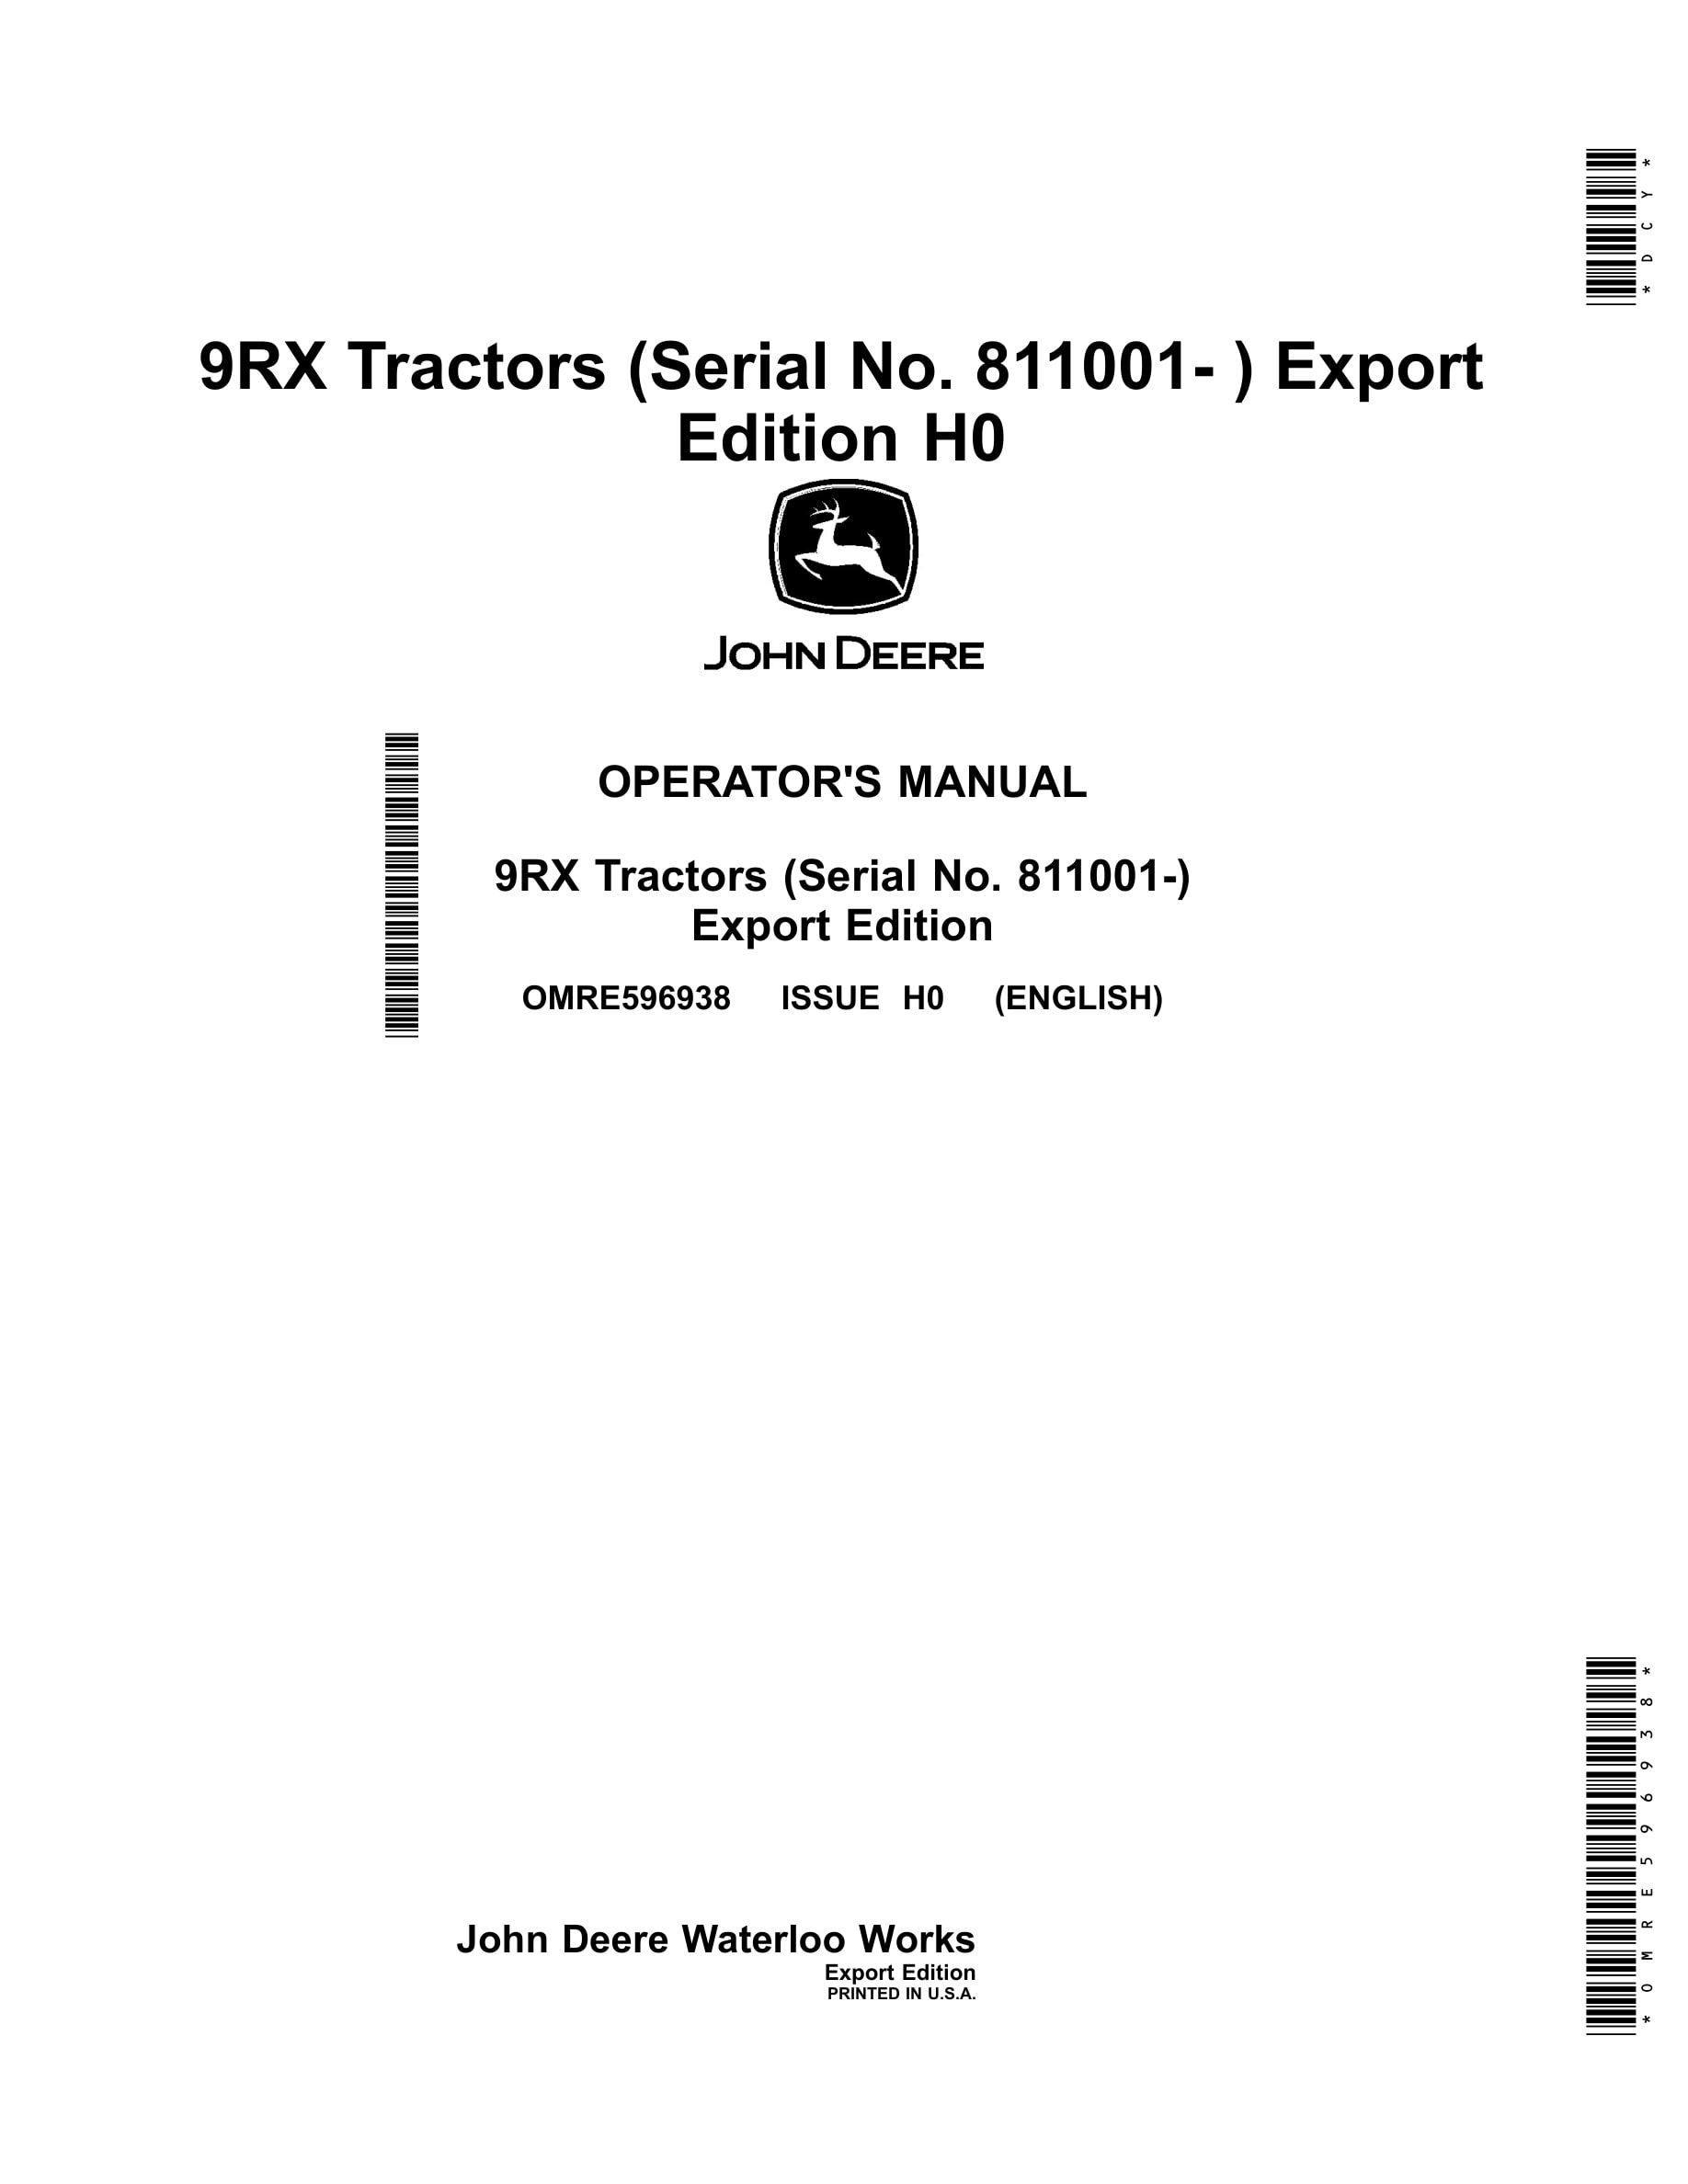 John Deere 9rx Tractors Operator Manuals OMRE596938-1